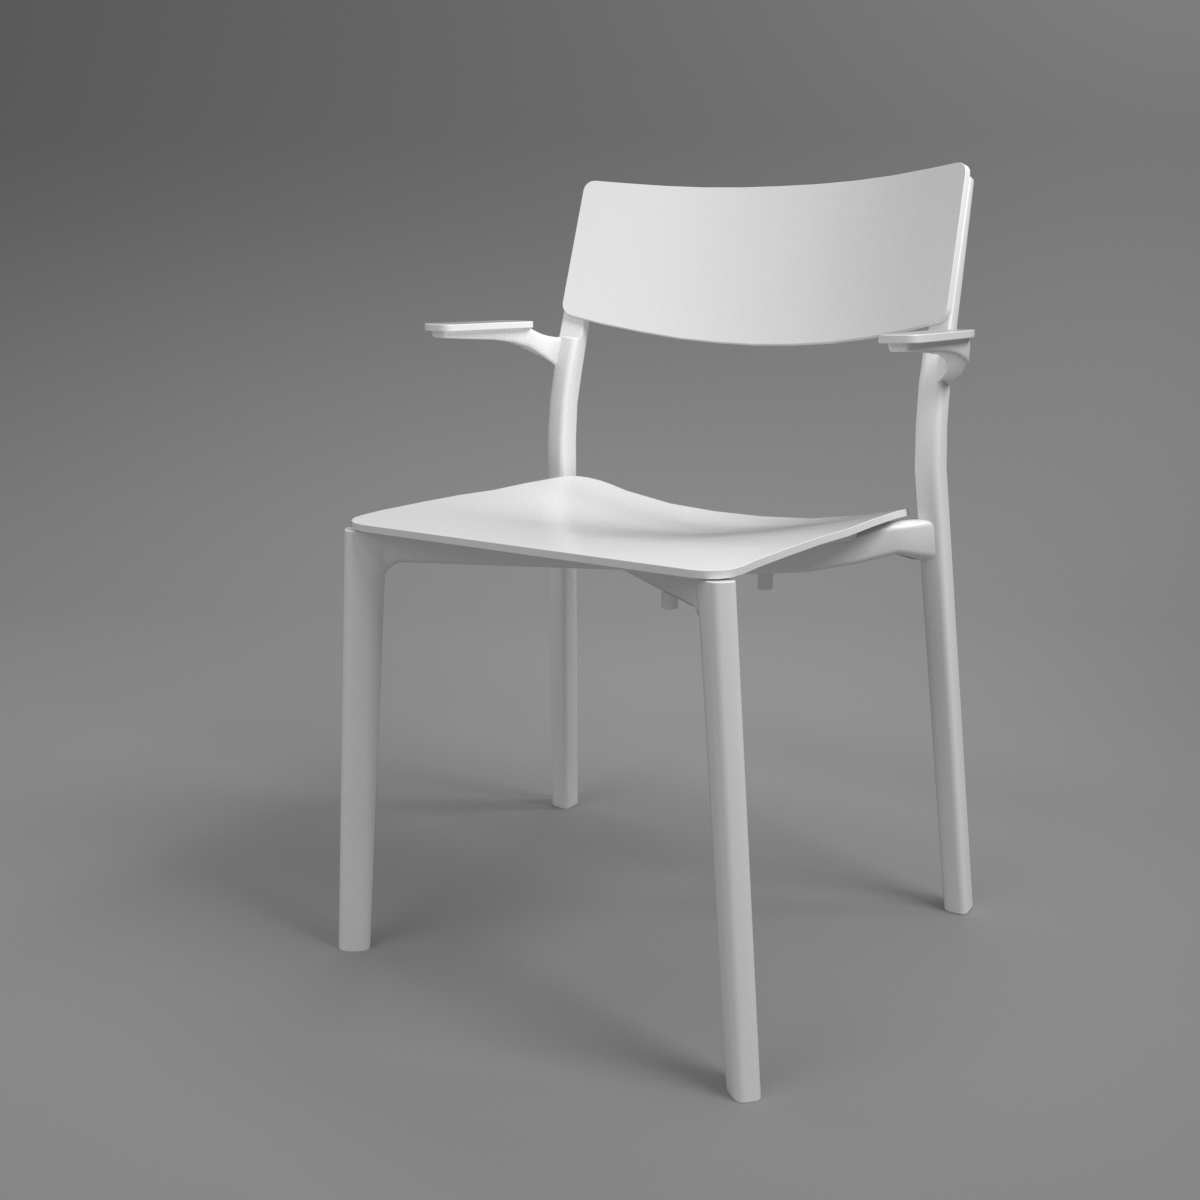 Inge White Chair